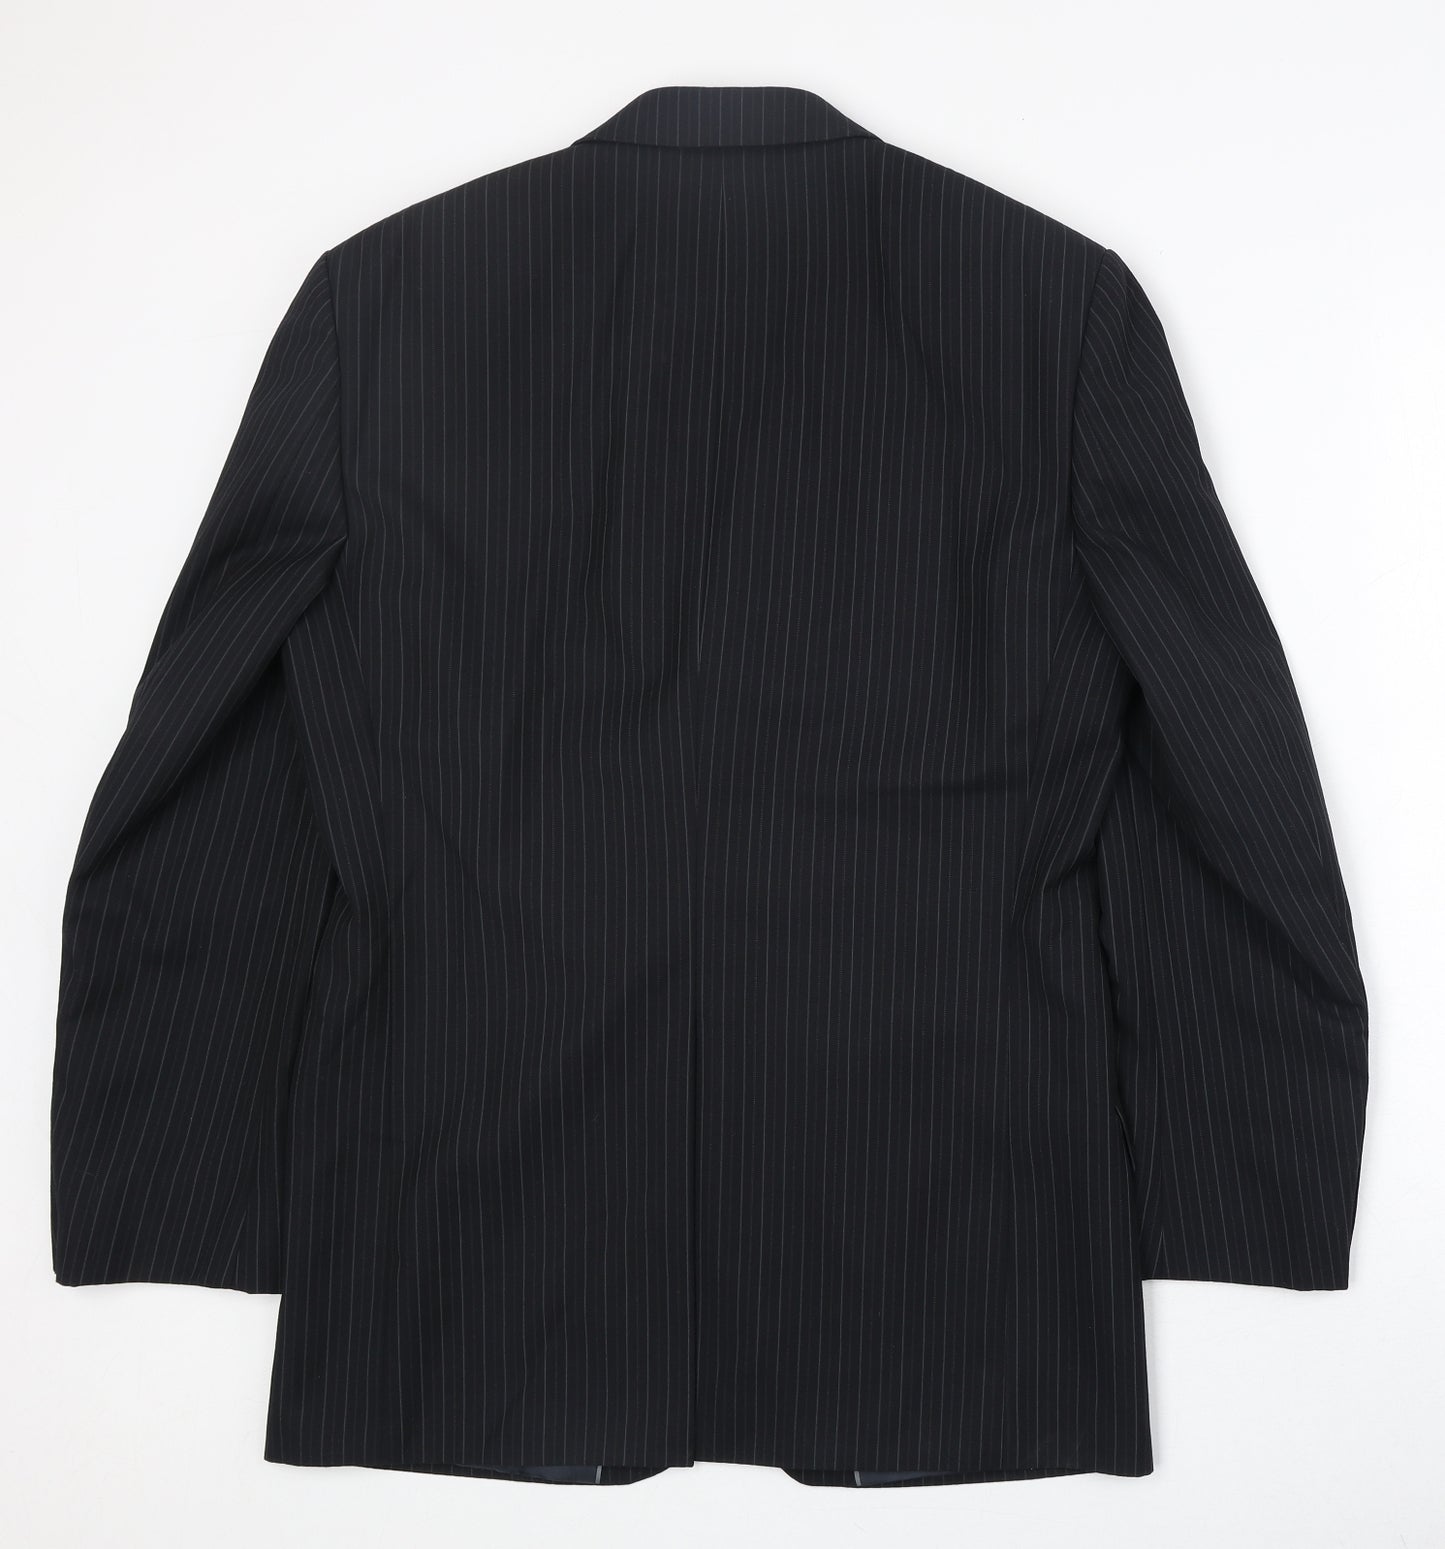 Marks and Spencer Mens Black Striped Polyester Jacket Suit Jacket Size 38 Regular - Pinstripe